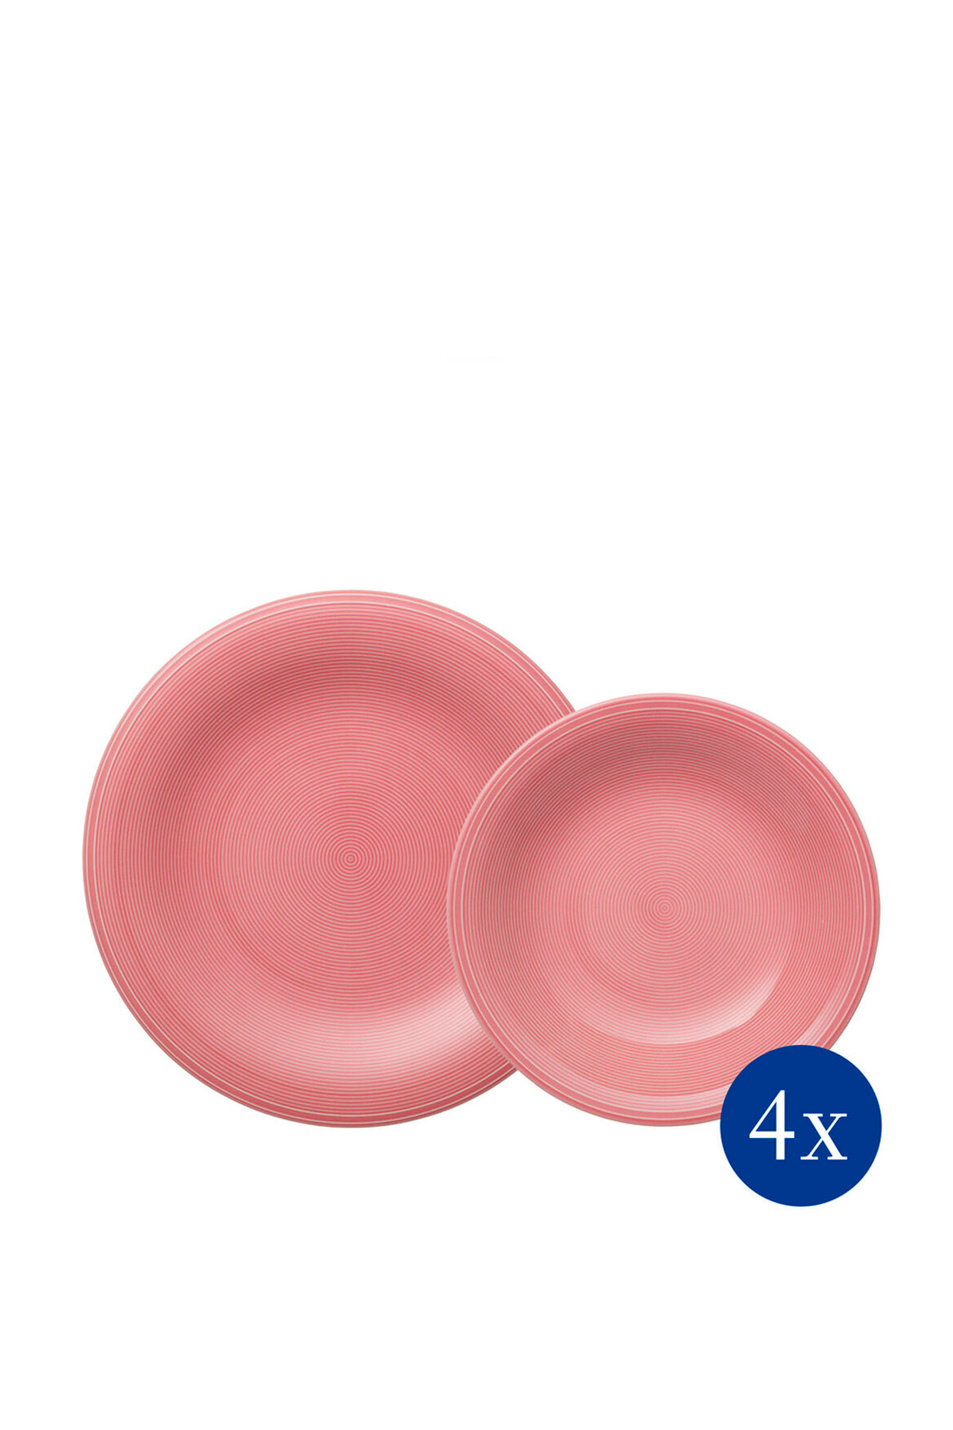 Не имеет пола Villeroy & Boch Набор столовой посуды Color Loop Rose на 4 персоны, 8 предметов (цвет ), артикул 19-5281-8717 | Фото 1